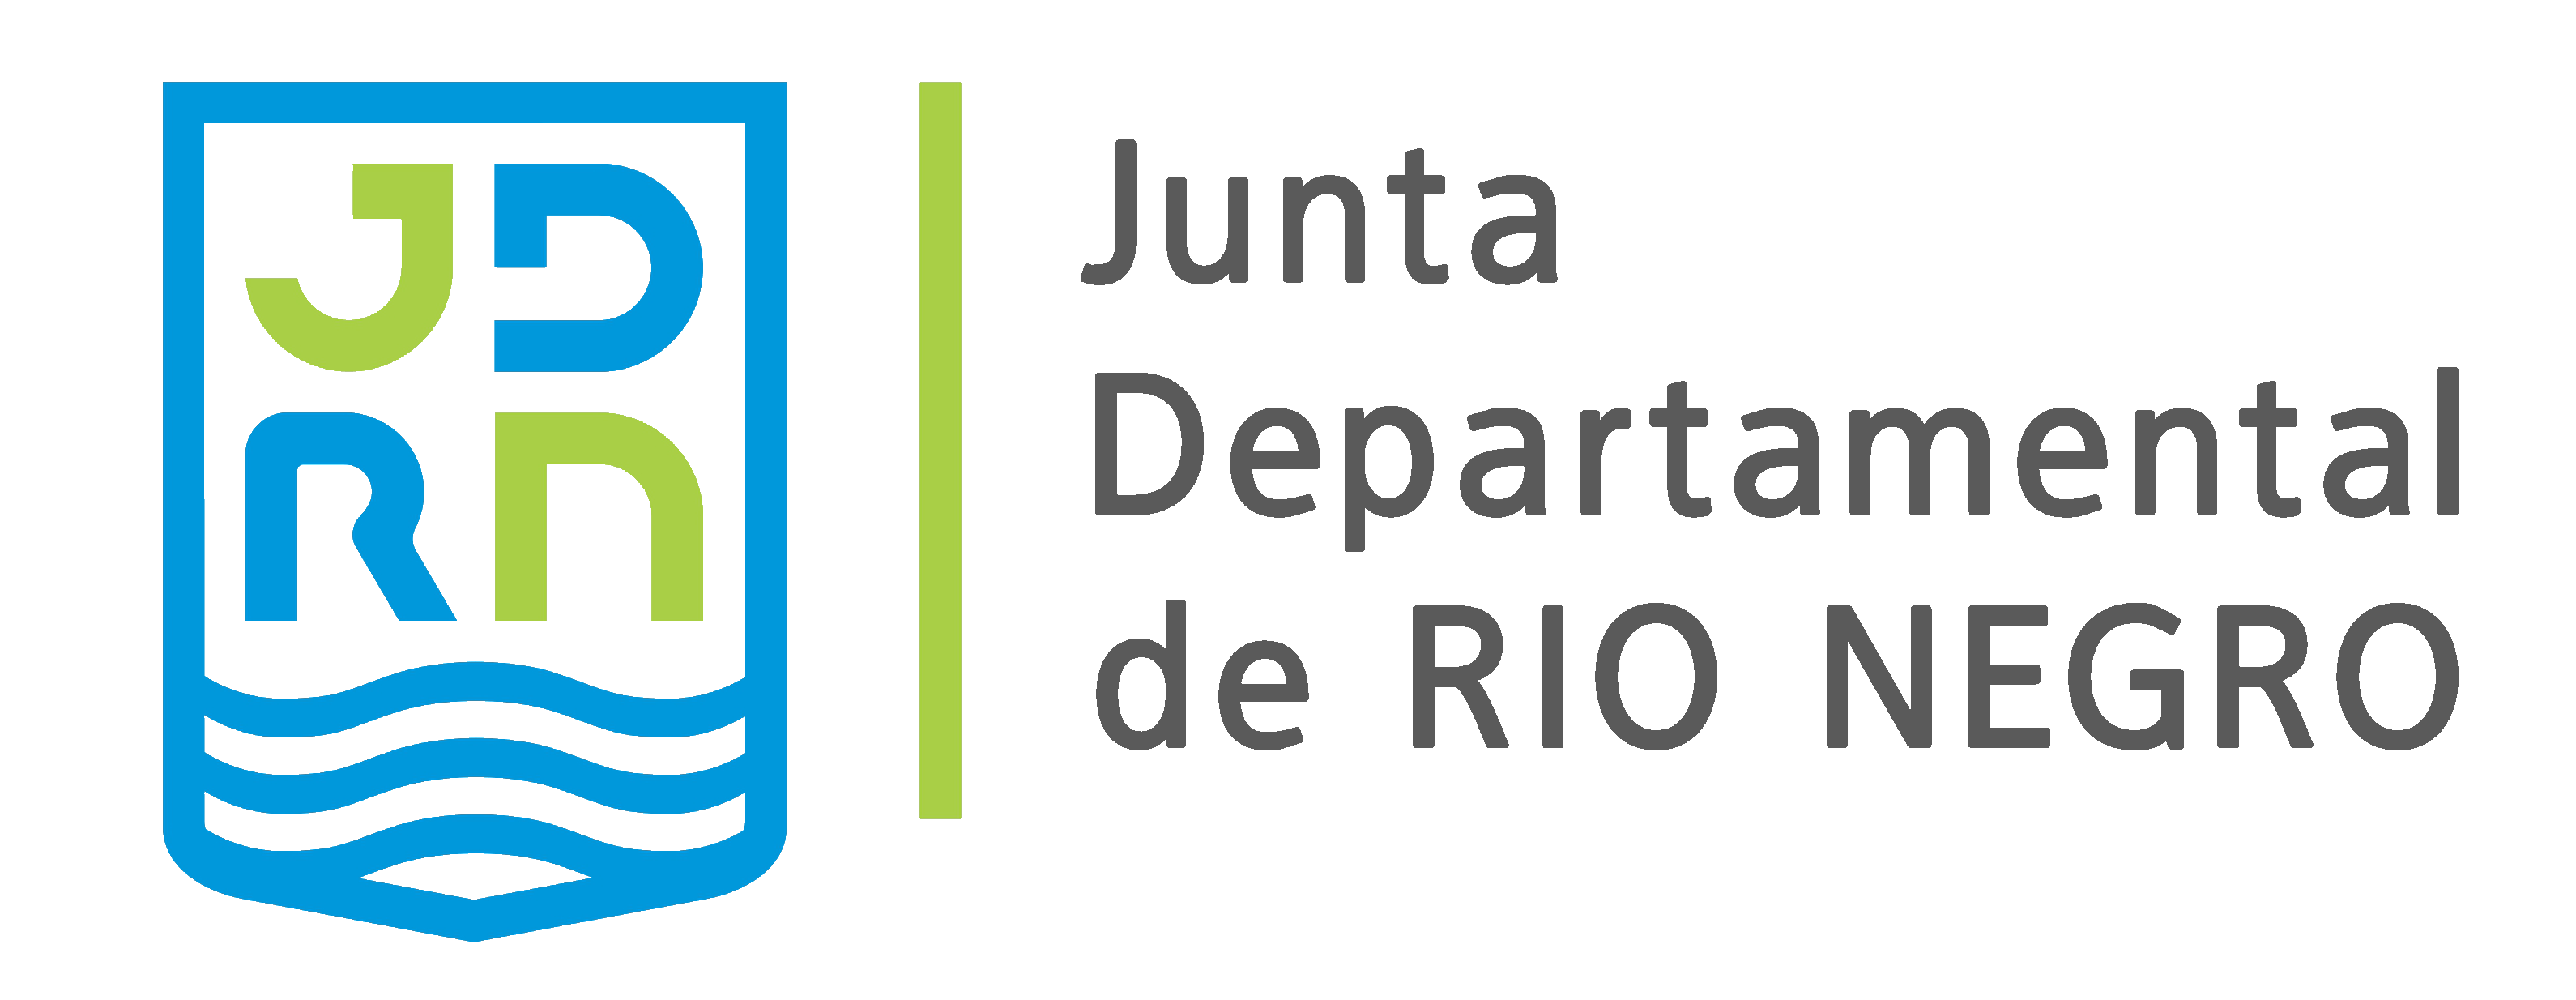 Logo of JUNTA DEPARTAMENTAL DE RIO NEGRO